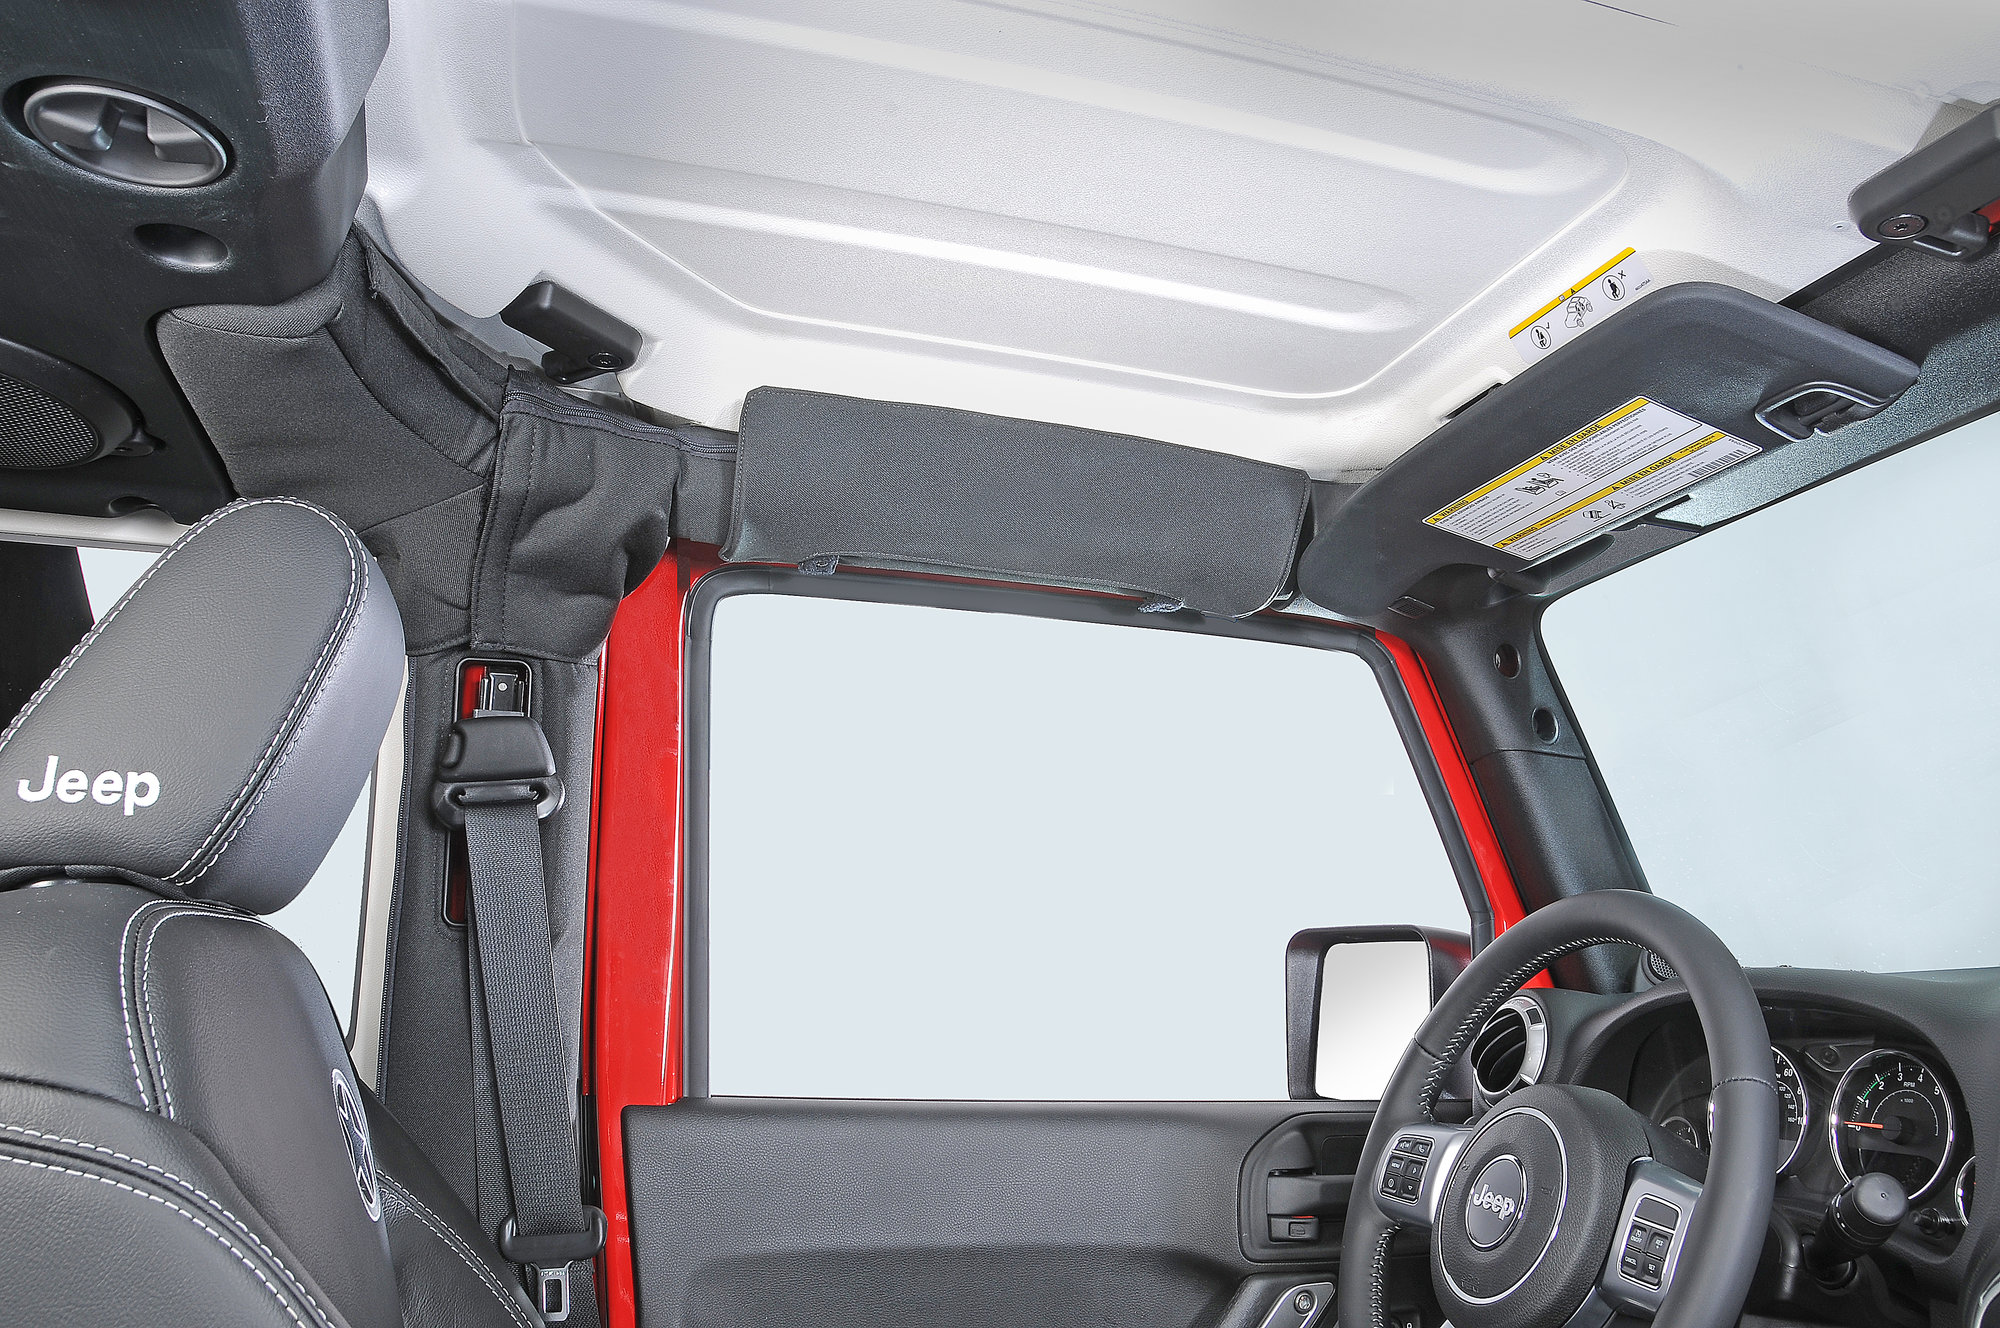 eklips Side Window Sun Visor for 87-18 Jeep Wrangler YJ, TJ, Unlimited,  Wrangler & Wrangler Unlimited JK | Quadratec